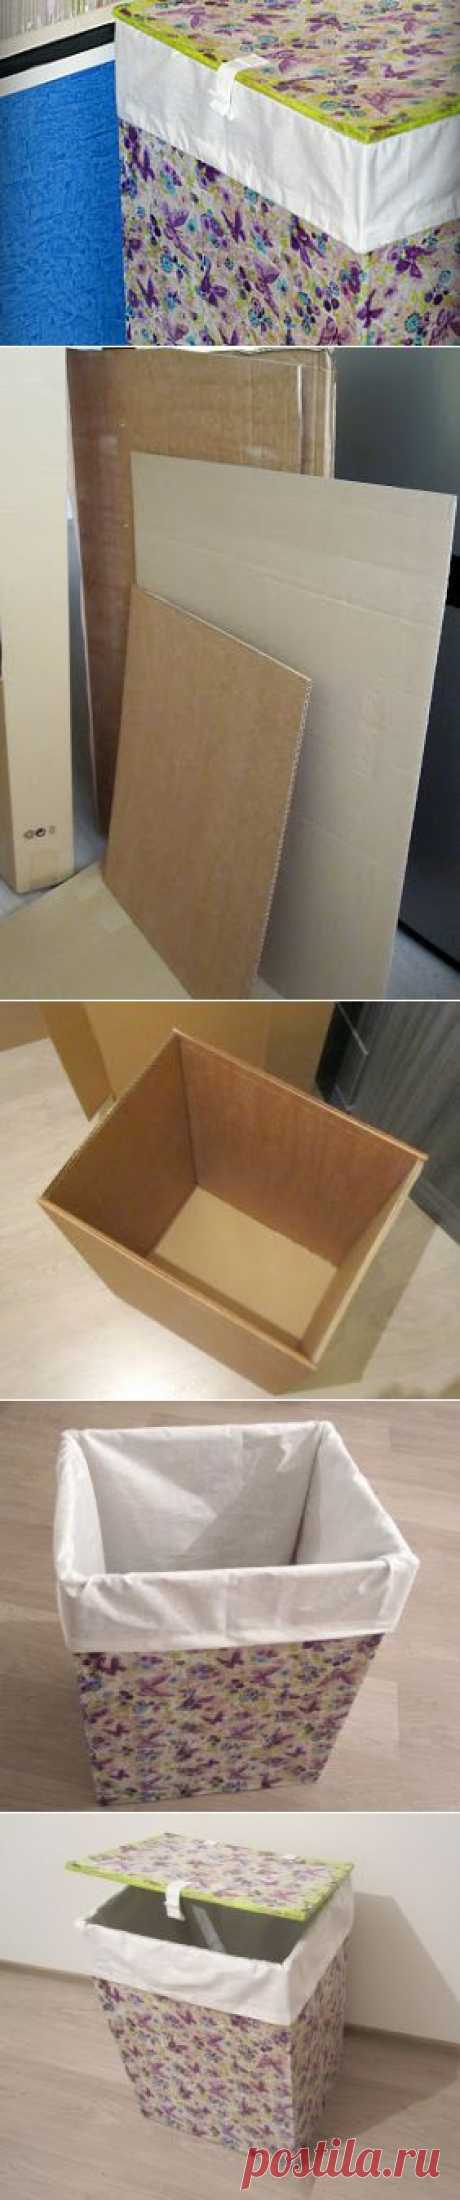 Ящик для белья из картона и бумажных салфеток - Ярмарка Мастеров - ручная работа, handmade